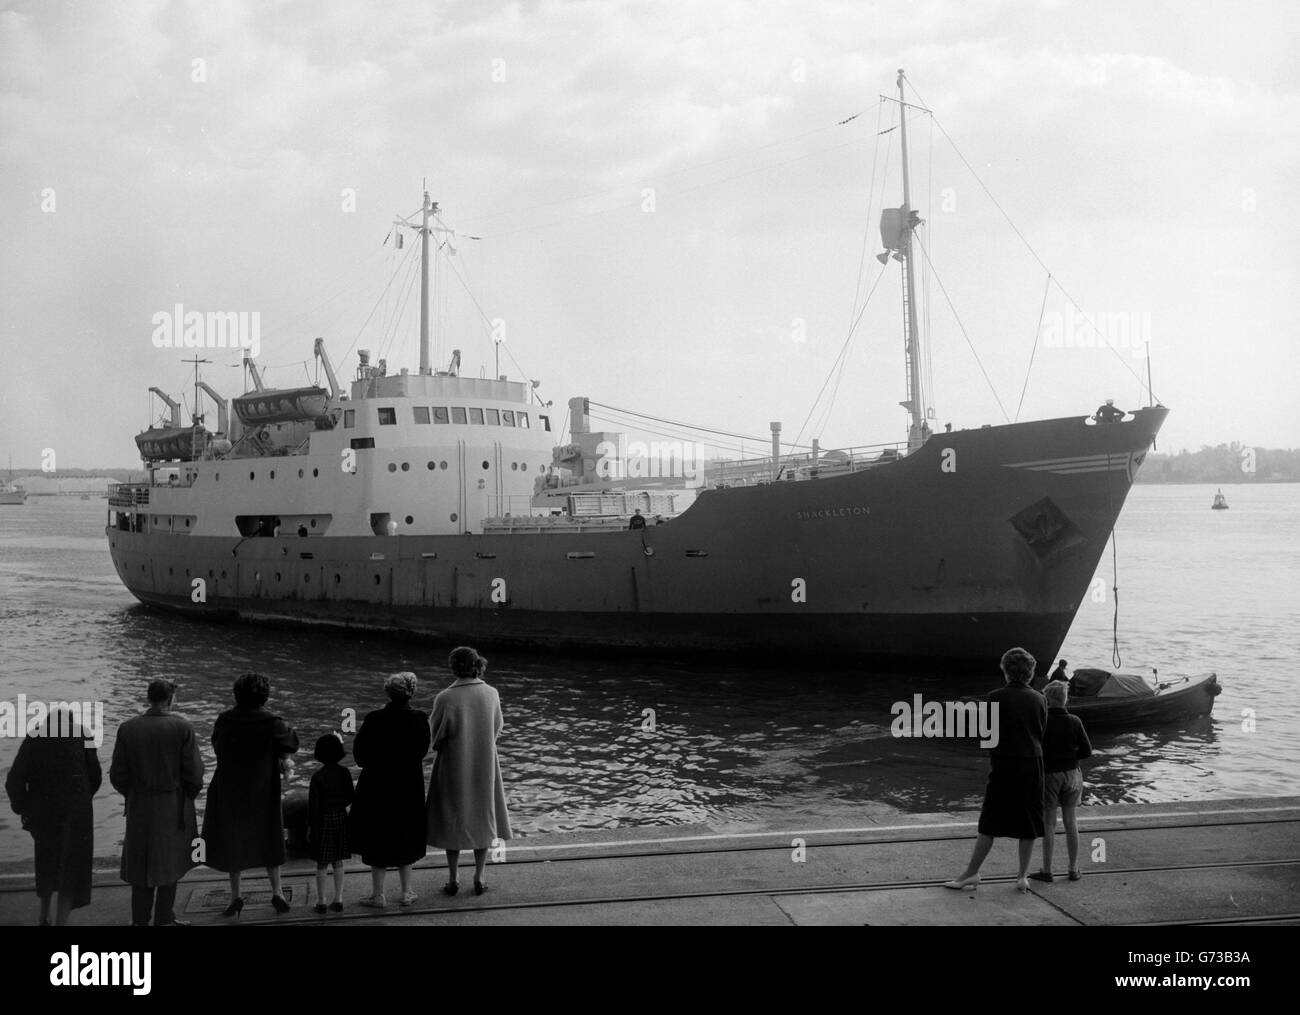 Le Shackleton arrive à Southampton.Le navire de recherche royal le Shackleton arrive à Southampton après sa charte antarctique par le gouvernement sud-africain.Opérant depuis les îles Falkland, elle a soulagé les stations météorologiques dans les eaux de l'Atlantique Sud. Banque D'Images